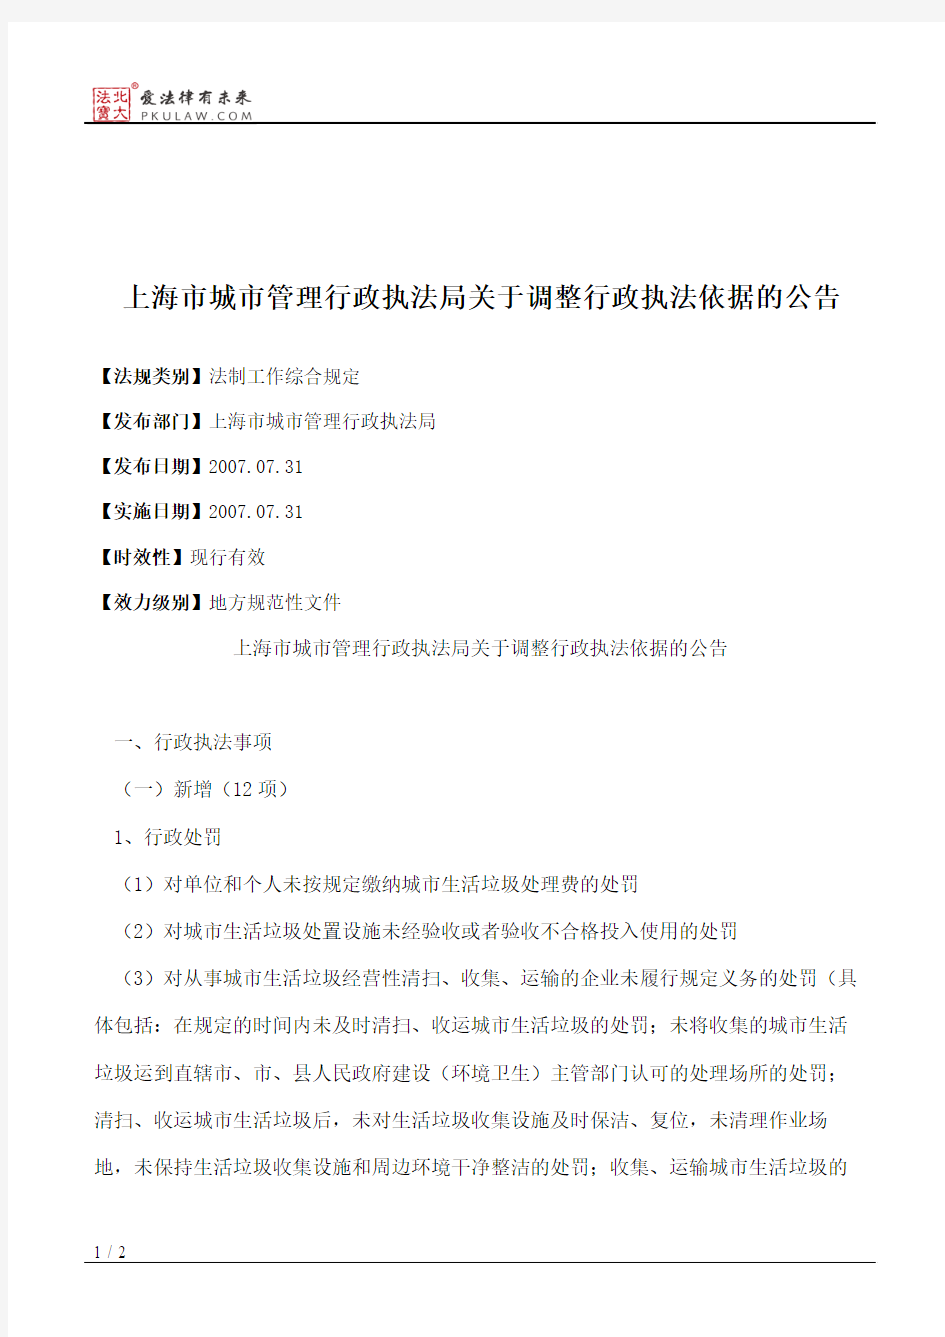 上海市城市管理行政执法局关于调整行政执法依据的公告